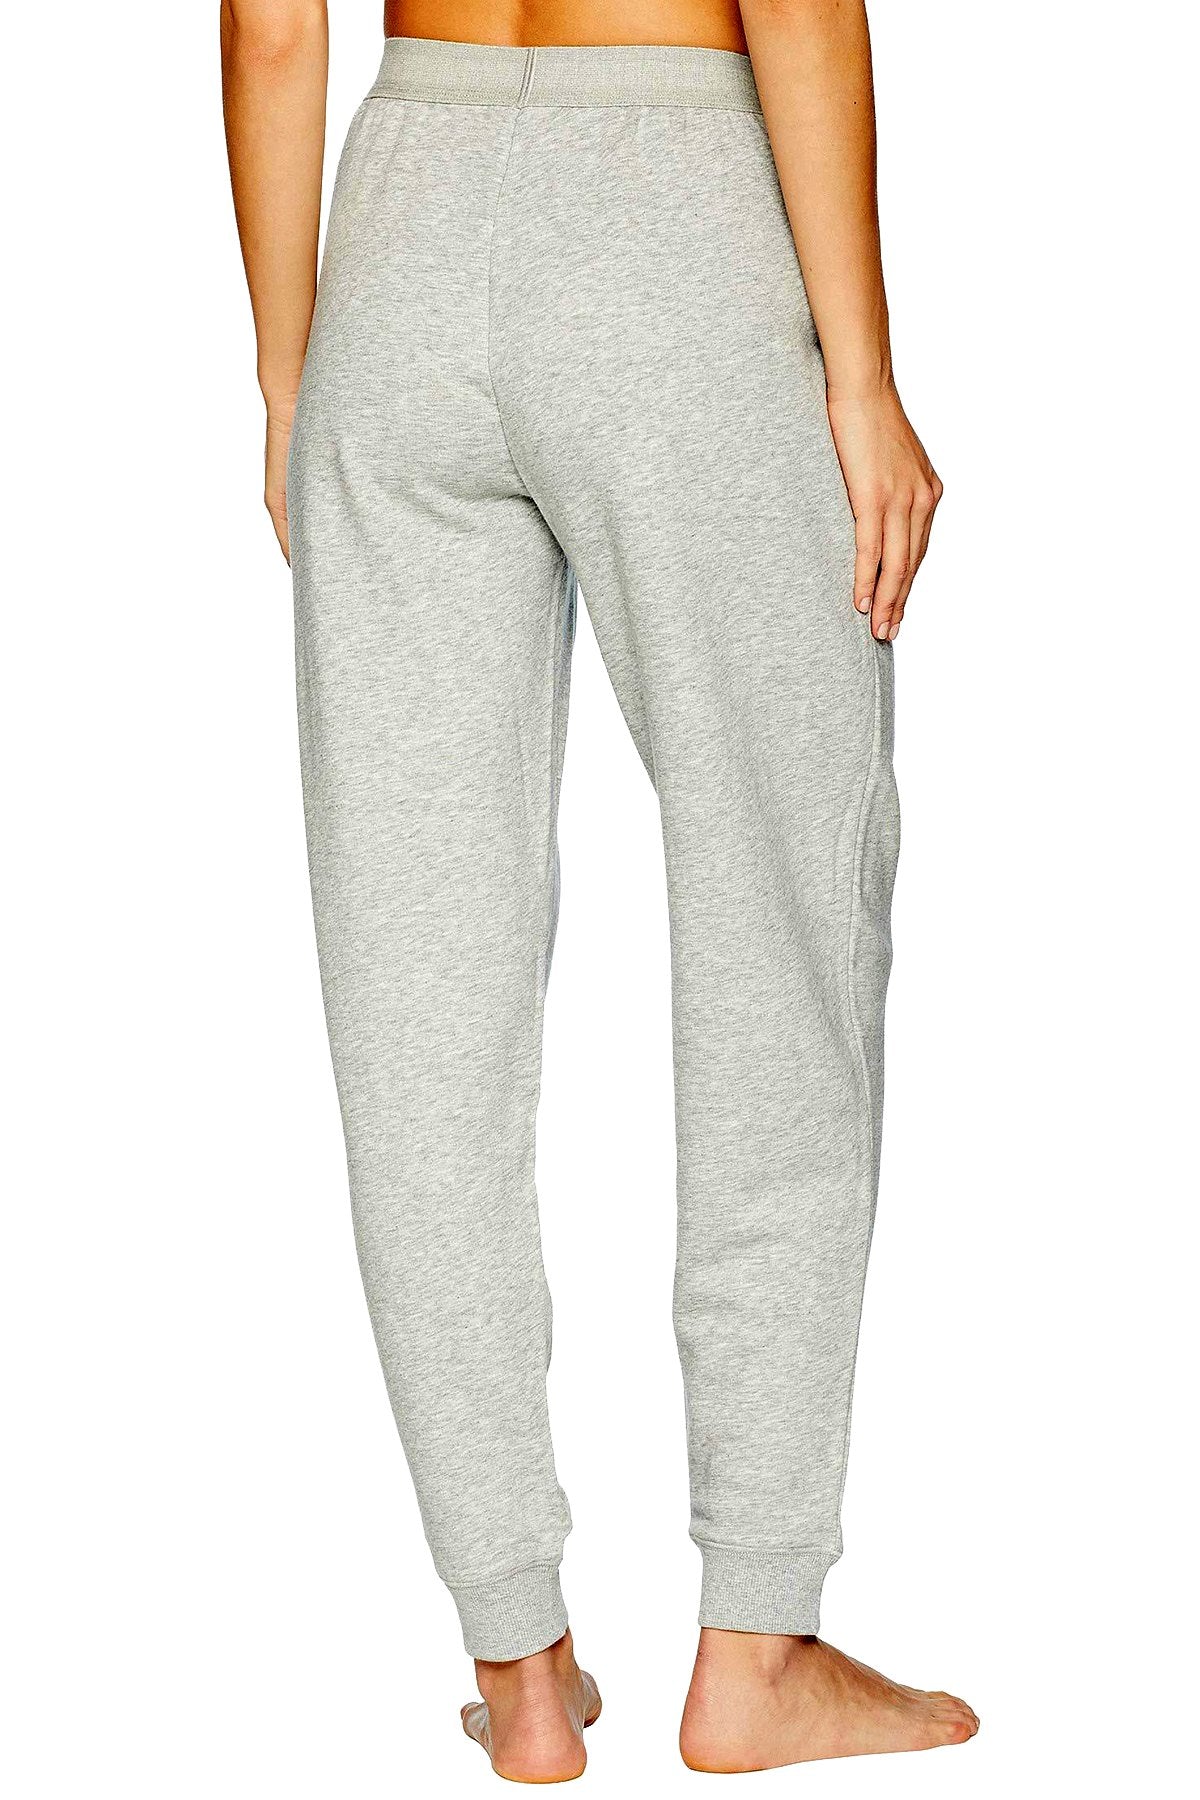 Calvin Klein Men's Monogram Logo Jogger Sweatpants, Heroic Grey Heather,  X-Large at  Men's Clothing store